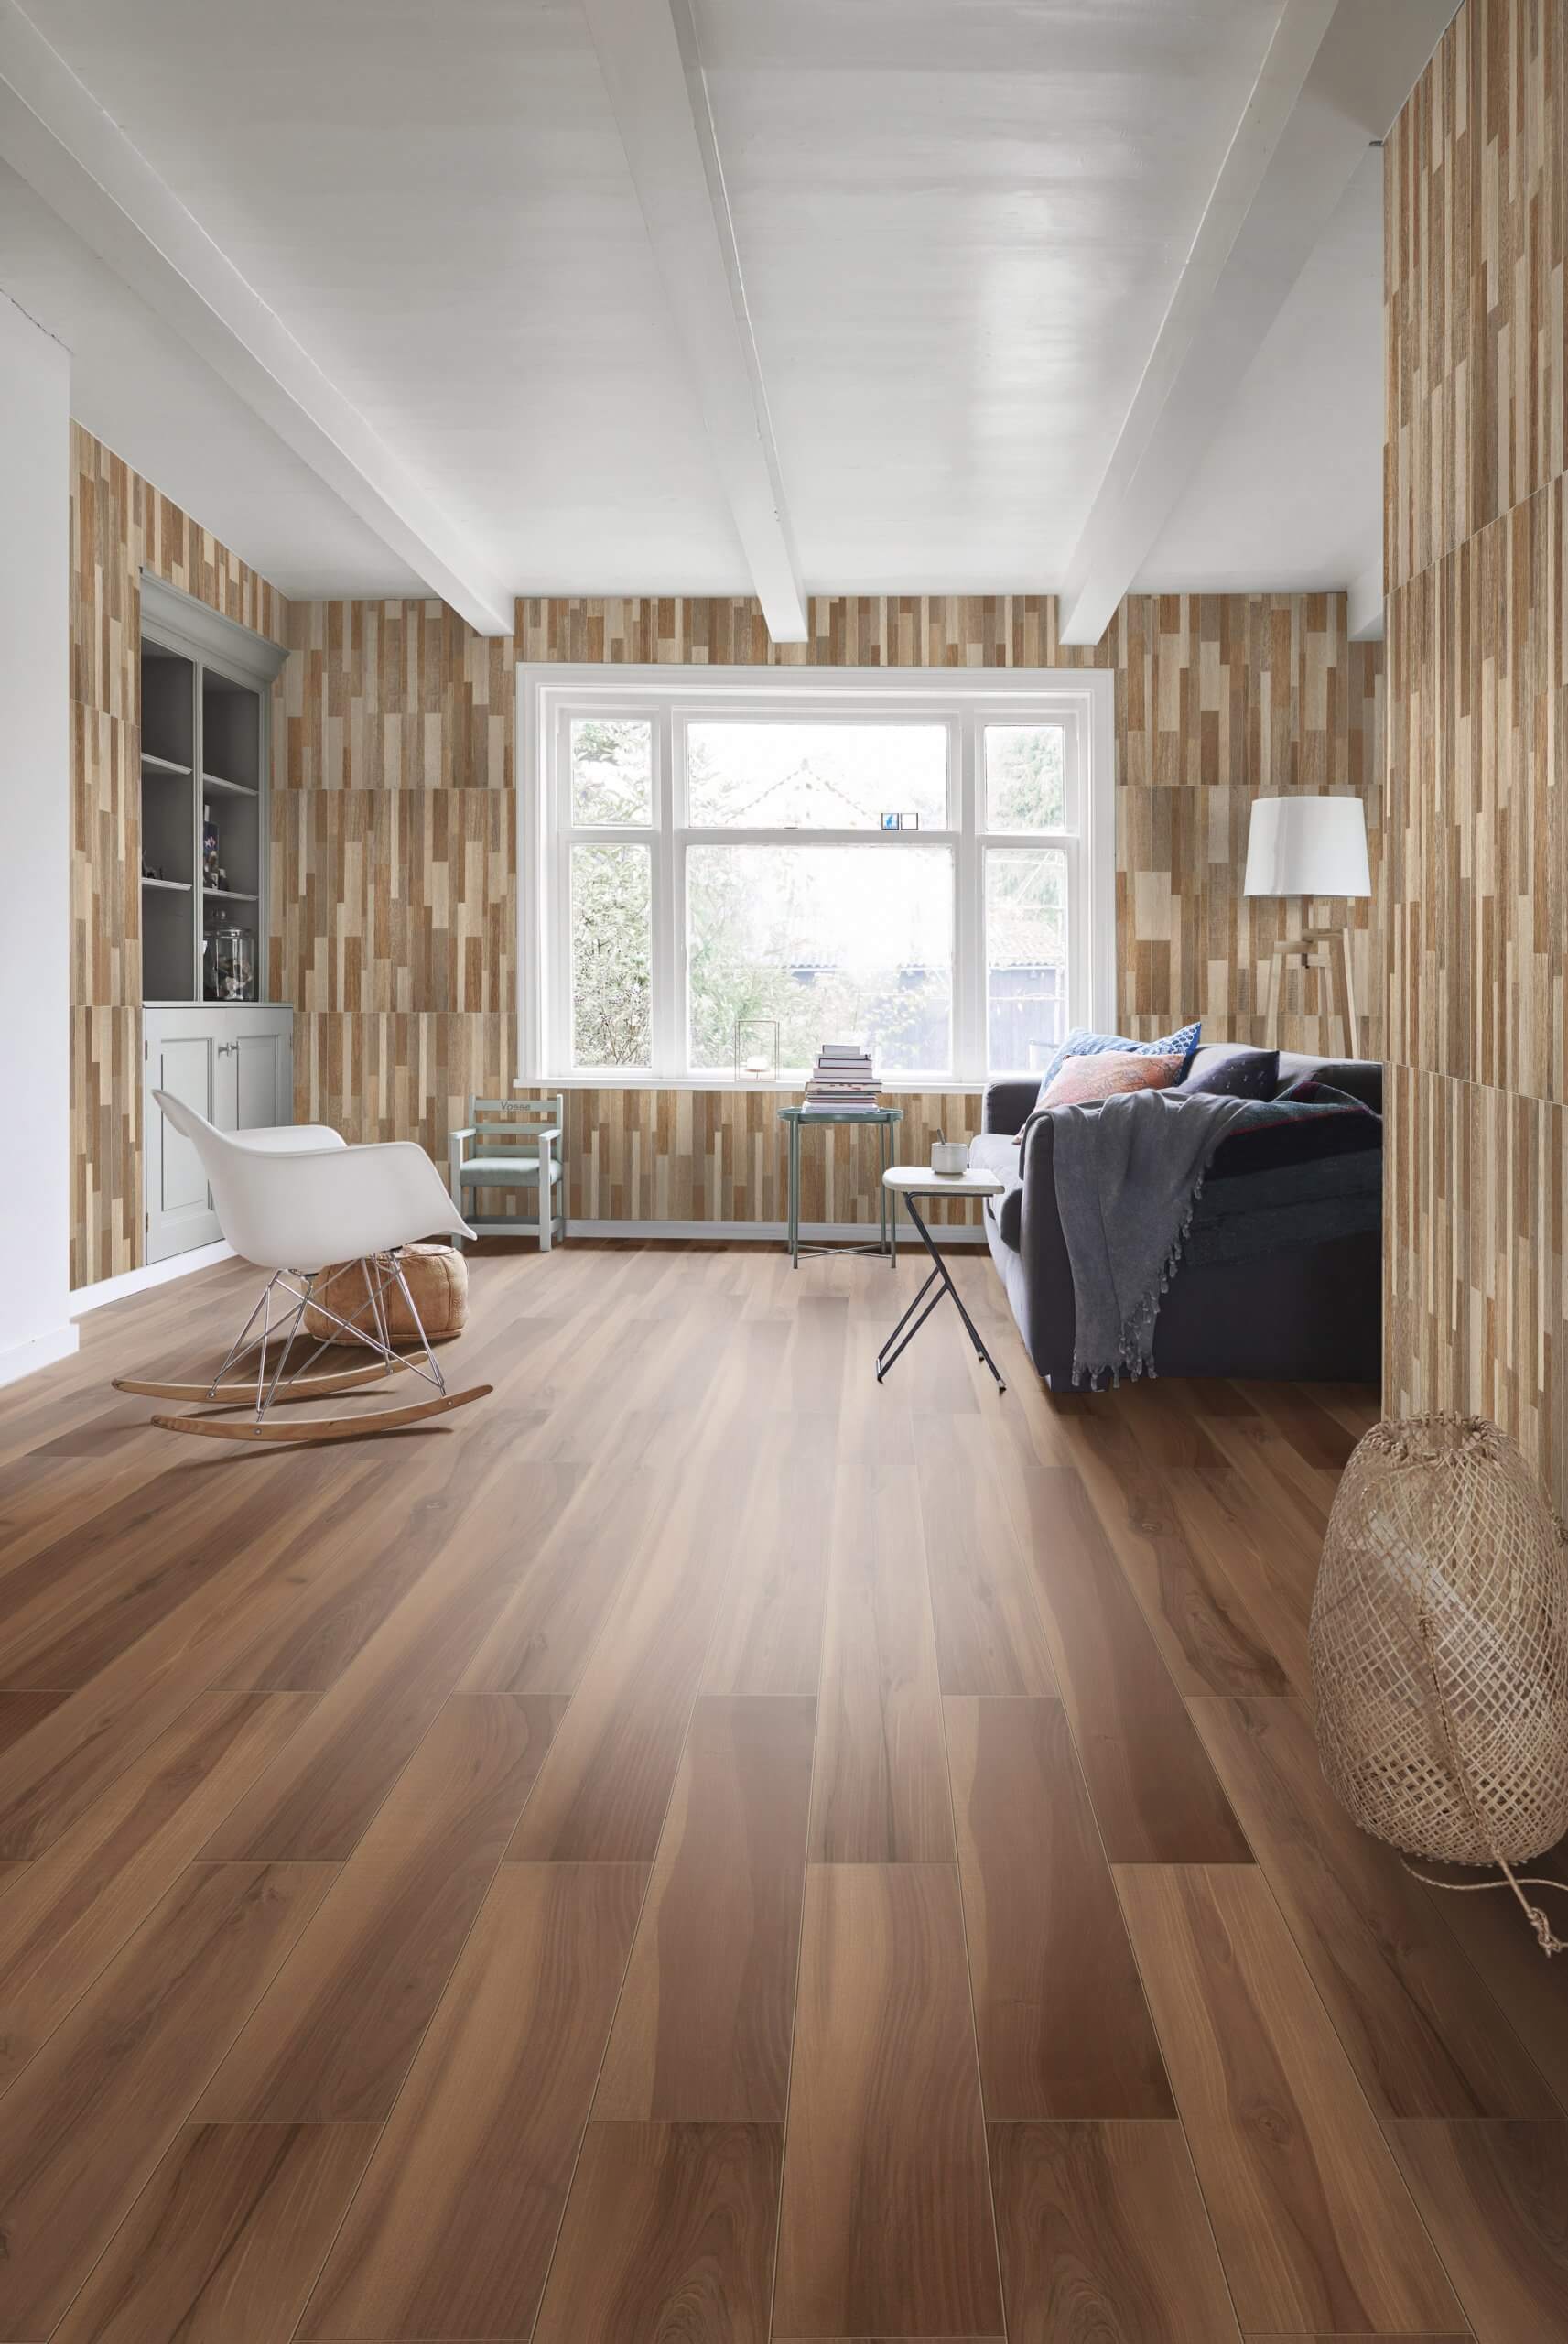 sala com revestimento cerâmico que representa madeira no piso e parede, exemplificando a tendência Confy zone